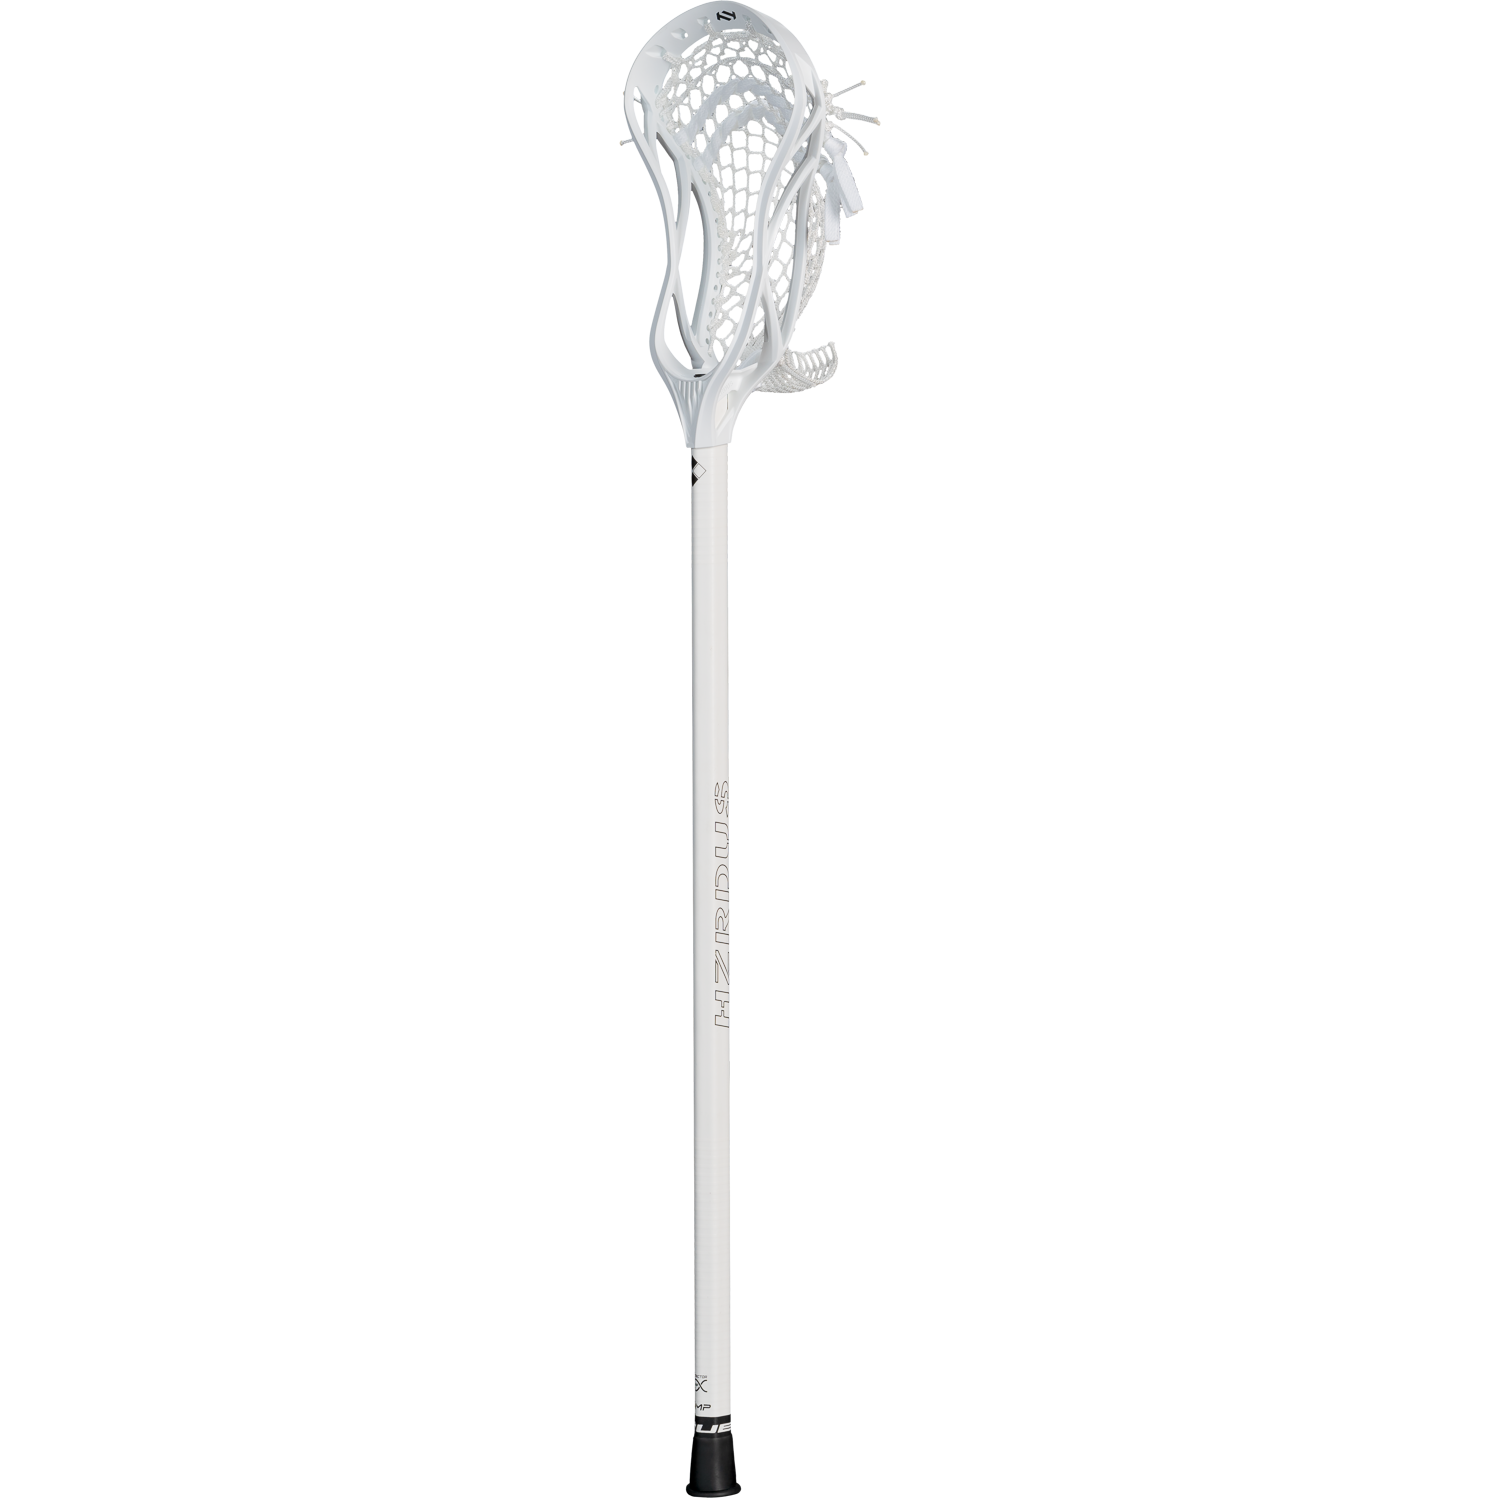 True Temper HZRDUS 22 Lacrosse Complete Stick